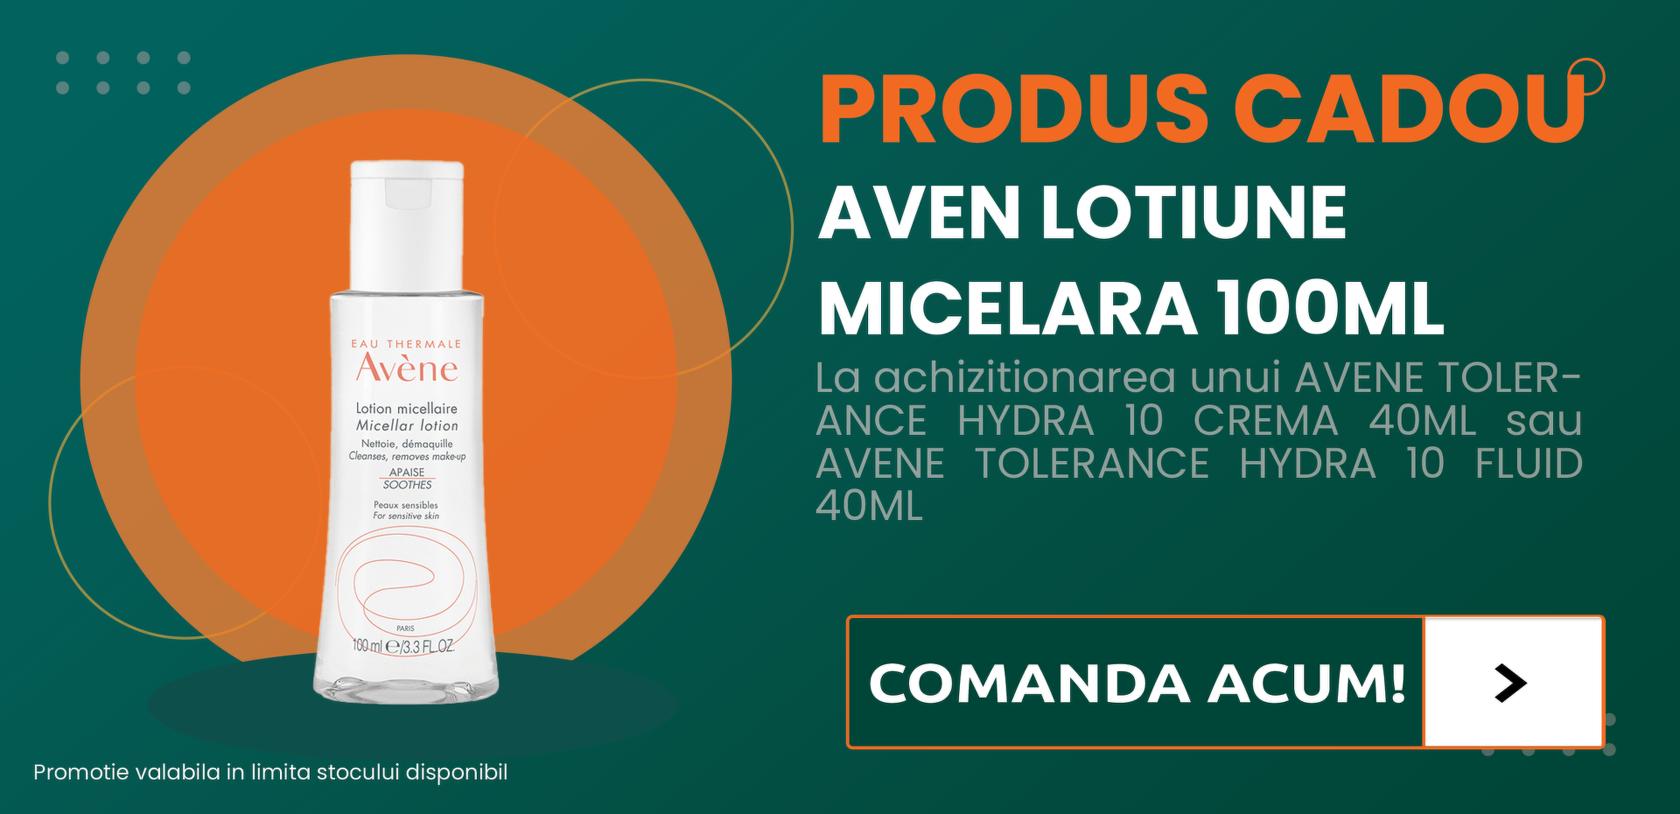 avene_lotiune_micelara_promo-1